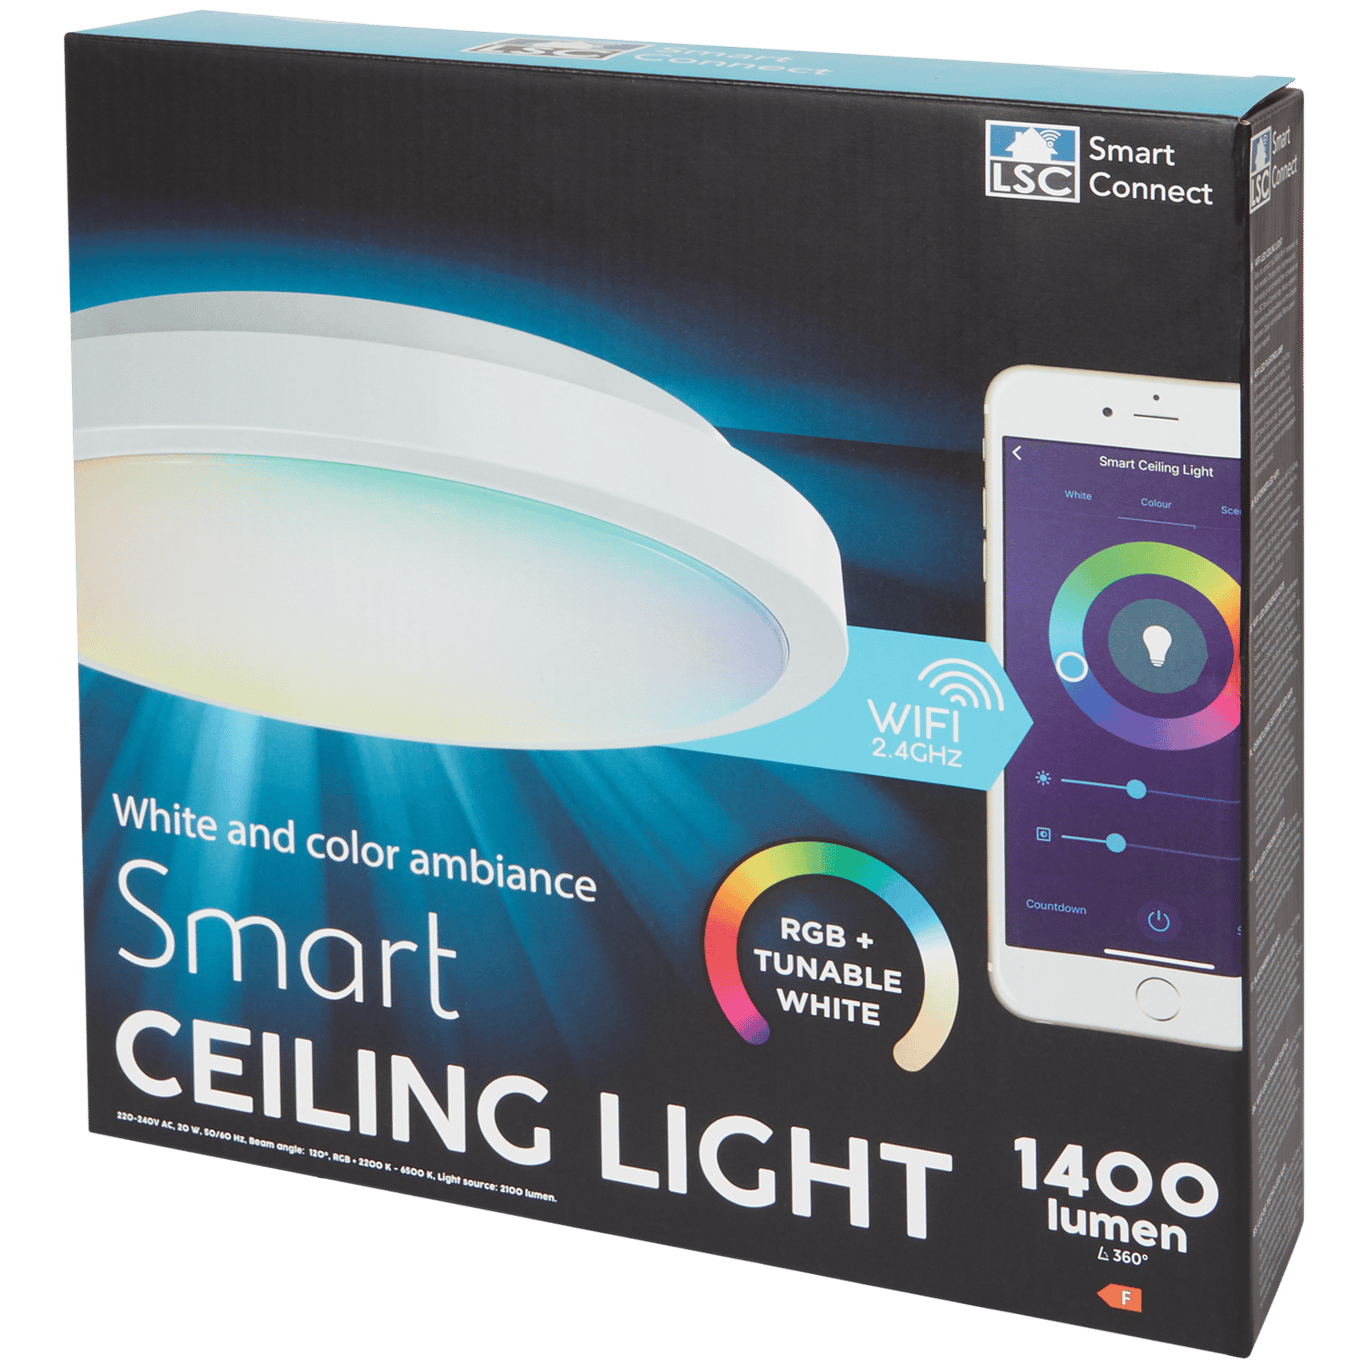 Stropní lampa LSC Smart Connect